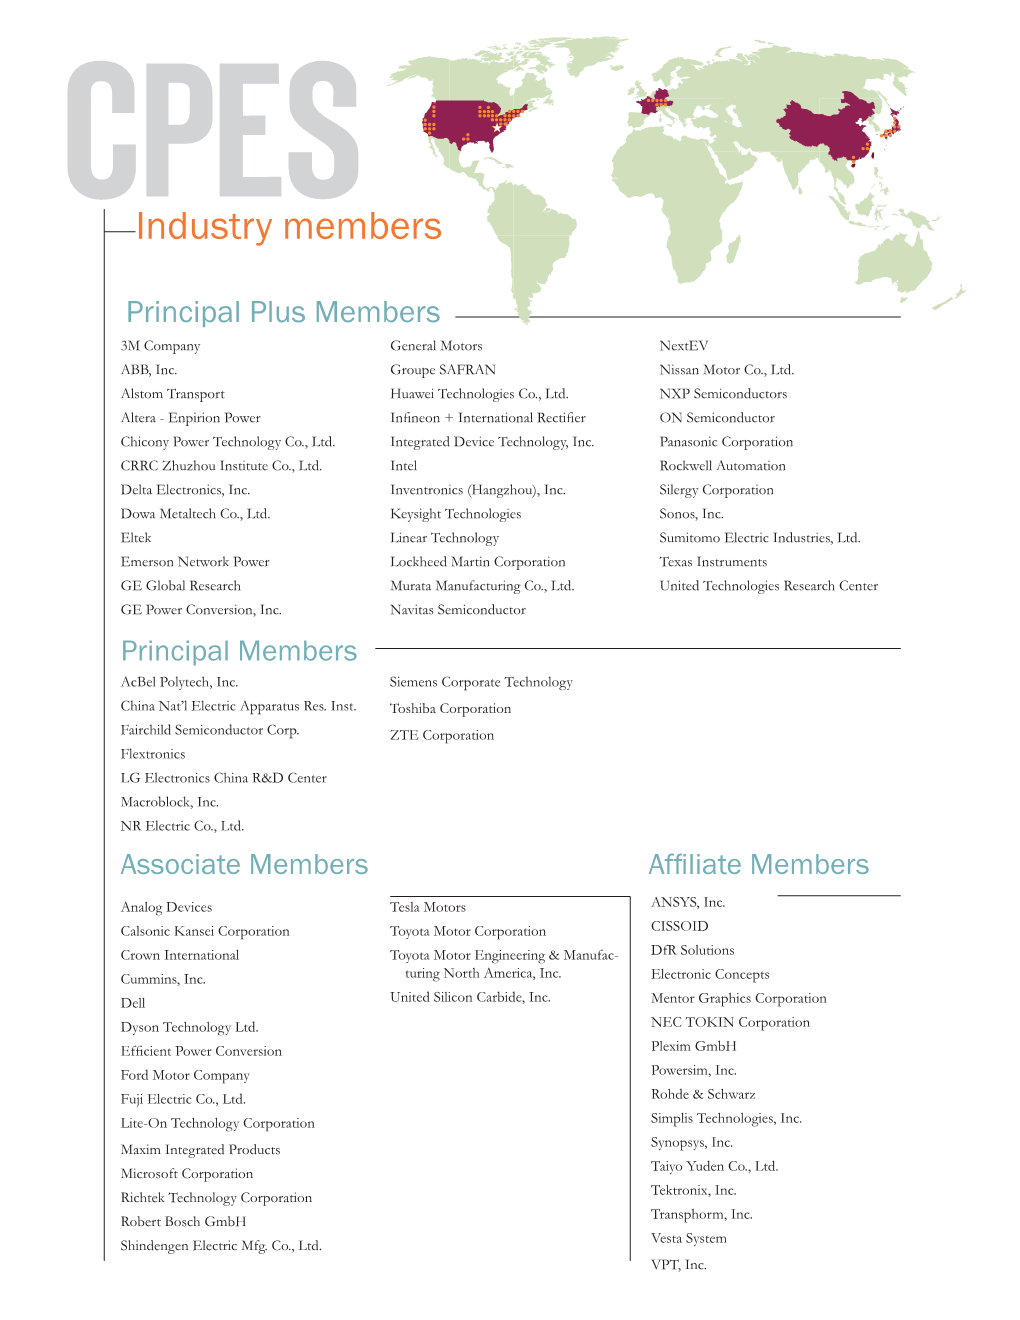 Industry Members